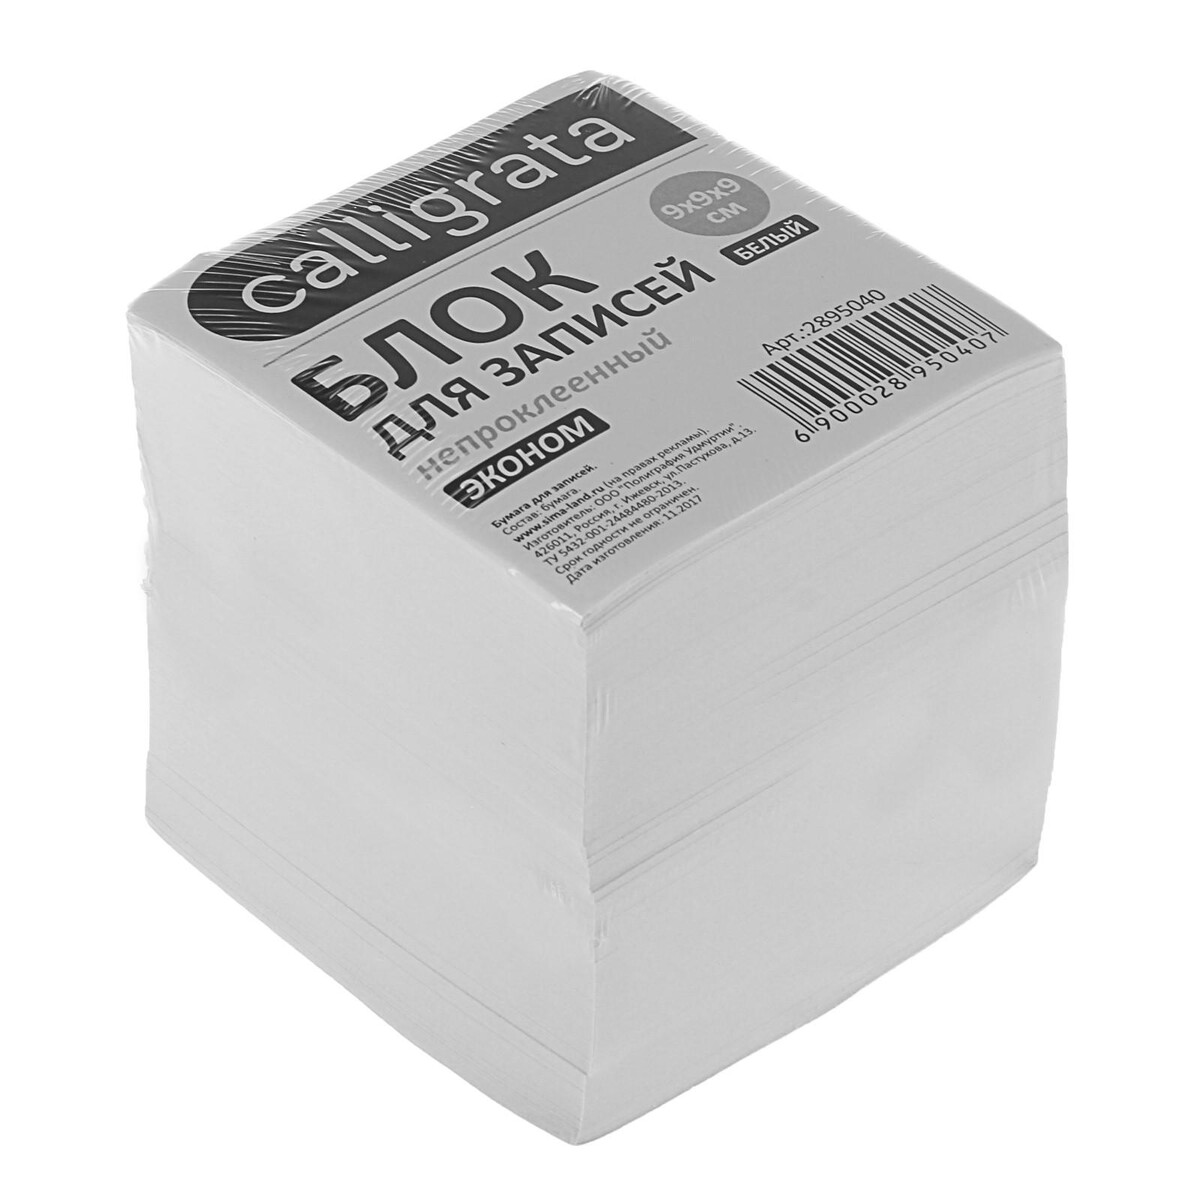 Блок бумаги для записей 9x9x9 см, calligrata, 55 г/м², 70-80%, непроклеенный, белый блок бумаги для записей calligrata 9x9x5 см 65 г м2 90% непроклеенный белый